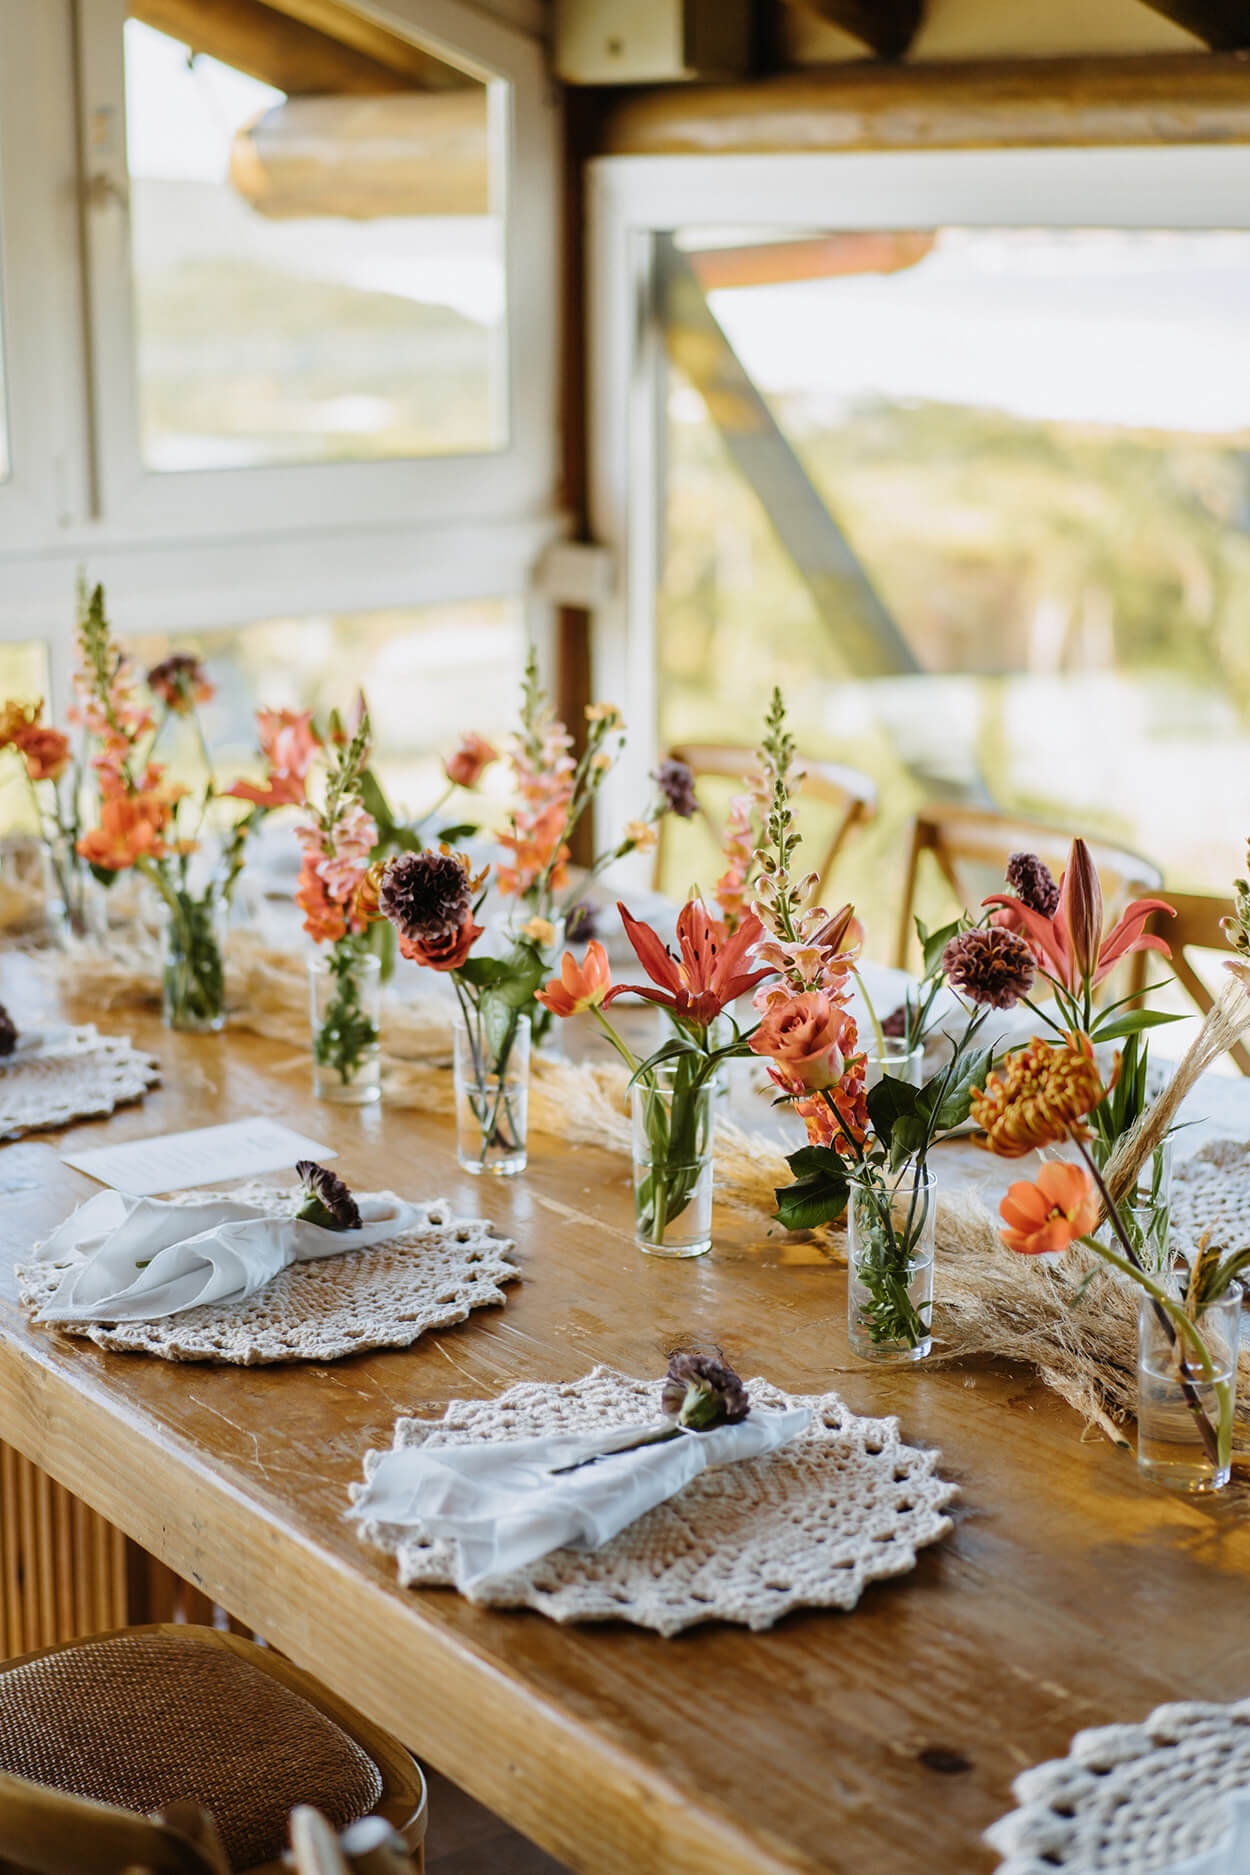 Mesa posta com lugar americando com croche e vasinhos com flores